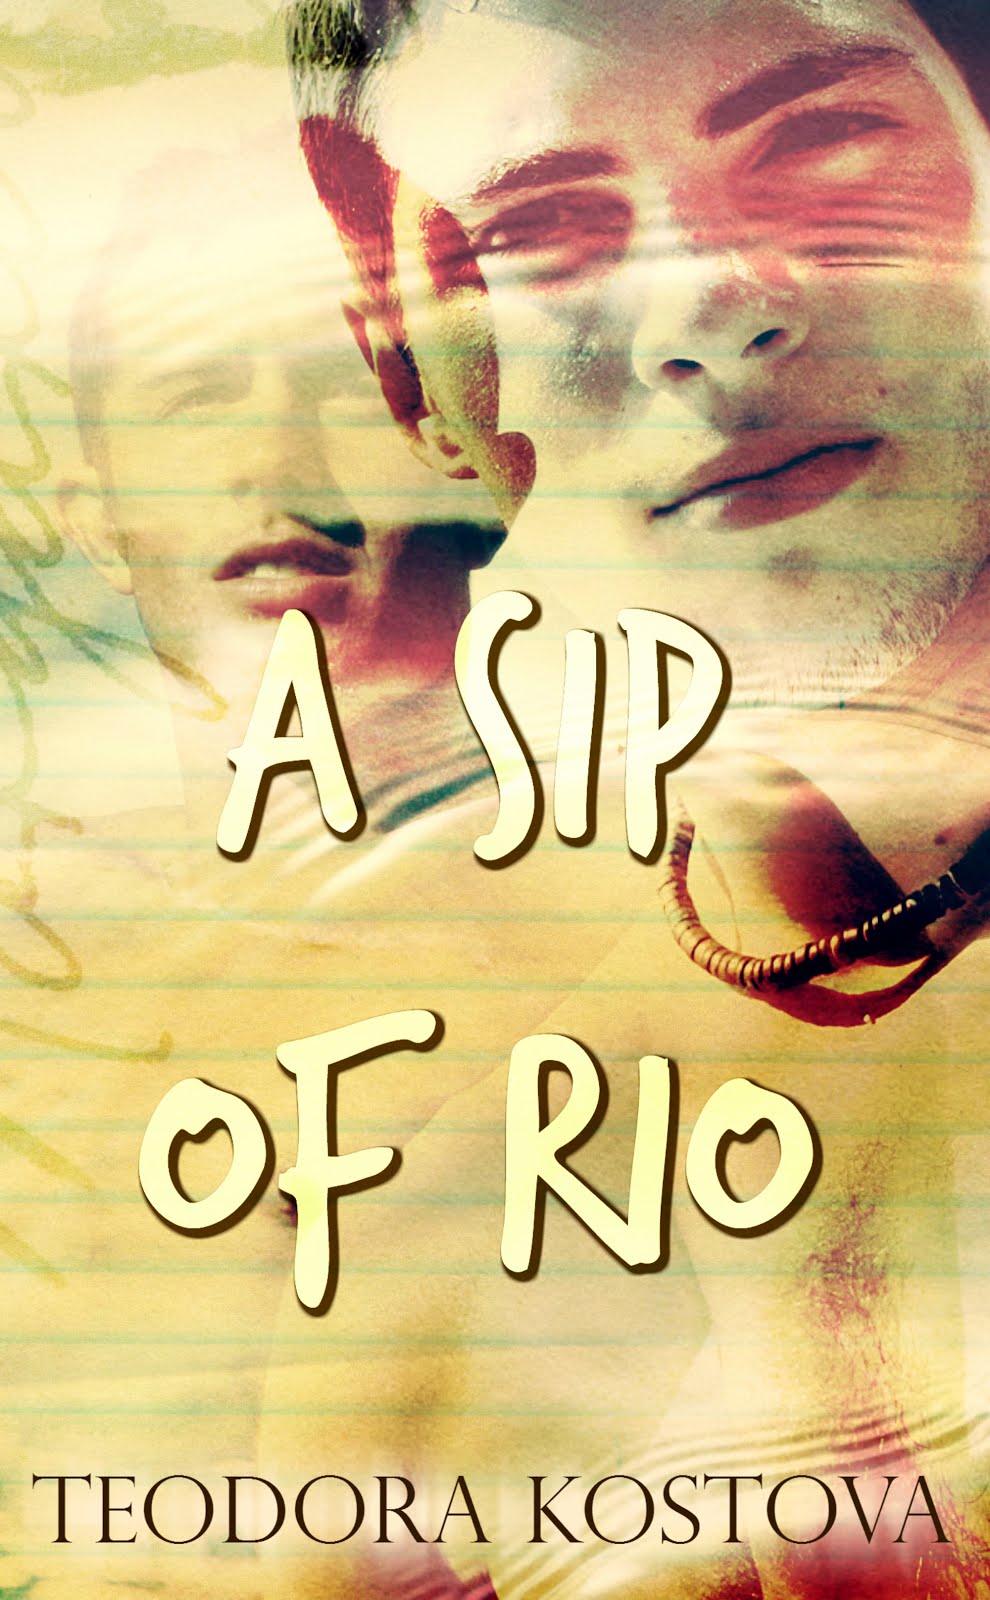 A Sip of Rio audio book